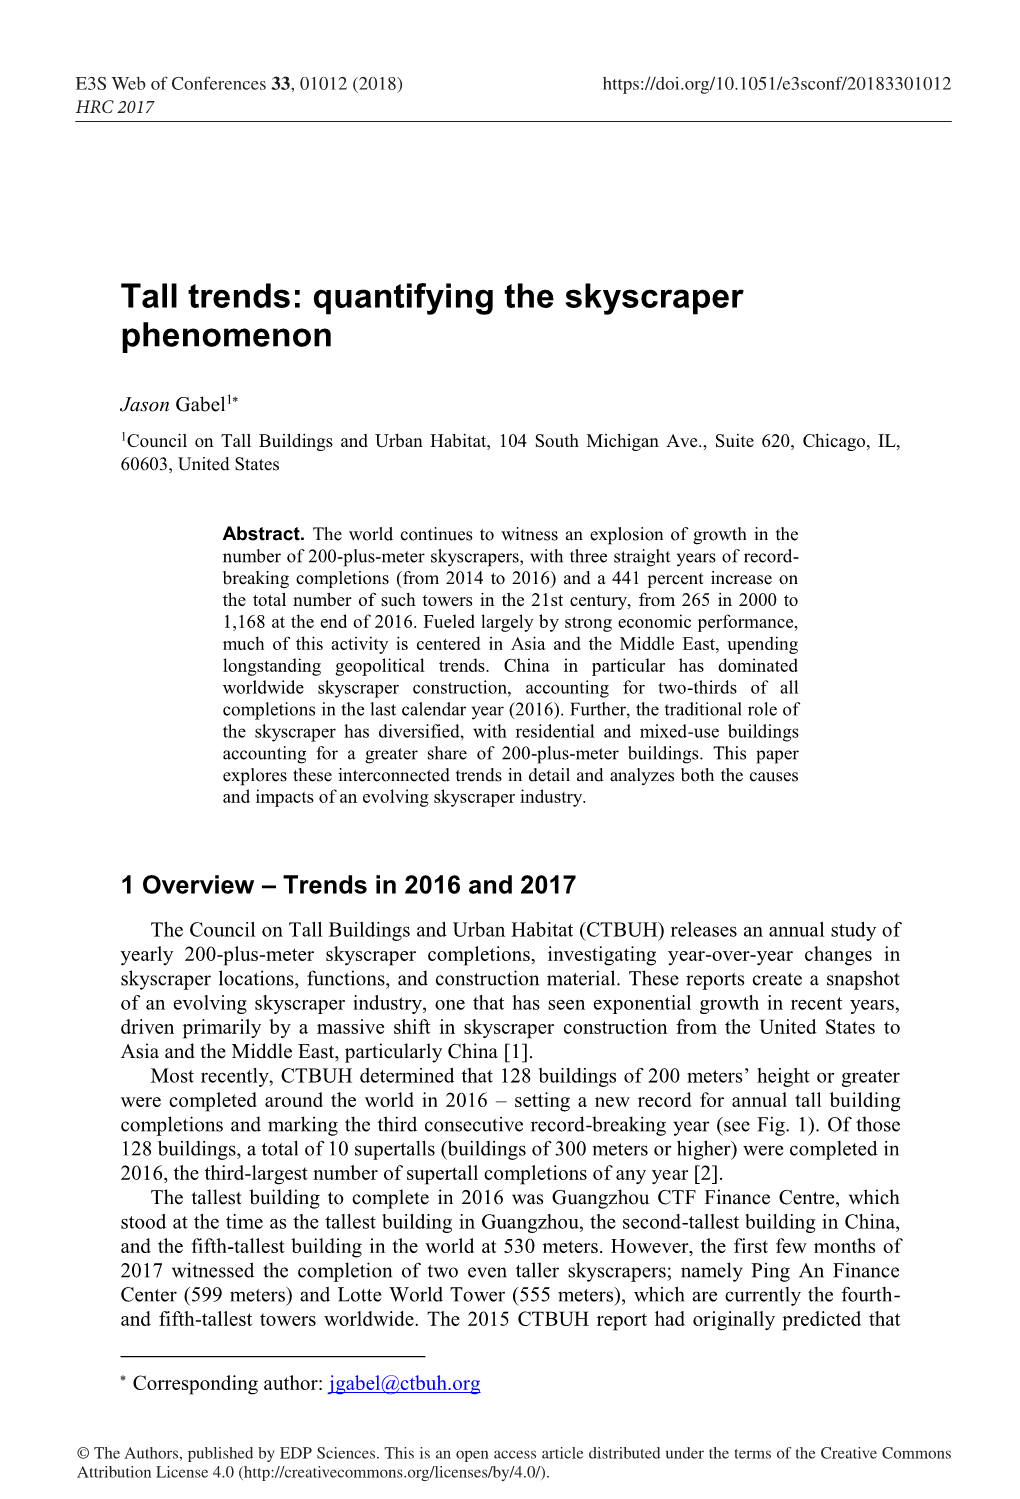 Tall Trends: Quantifying the Skyscraper Phenomenon